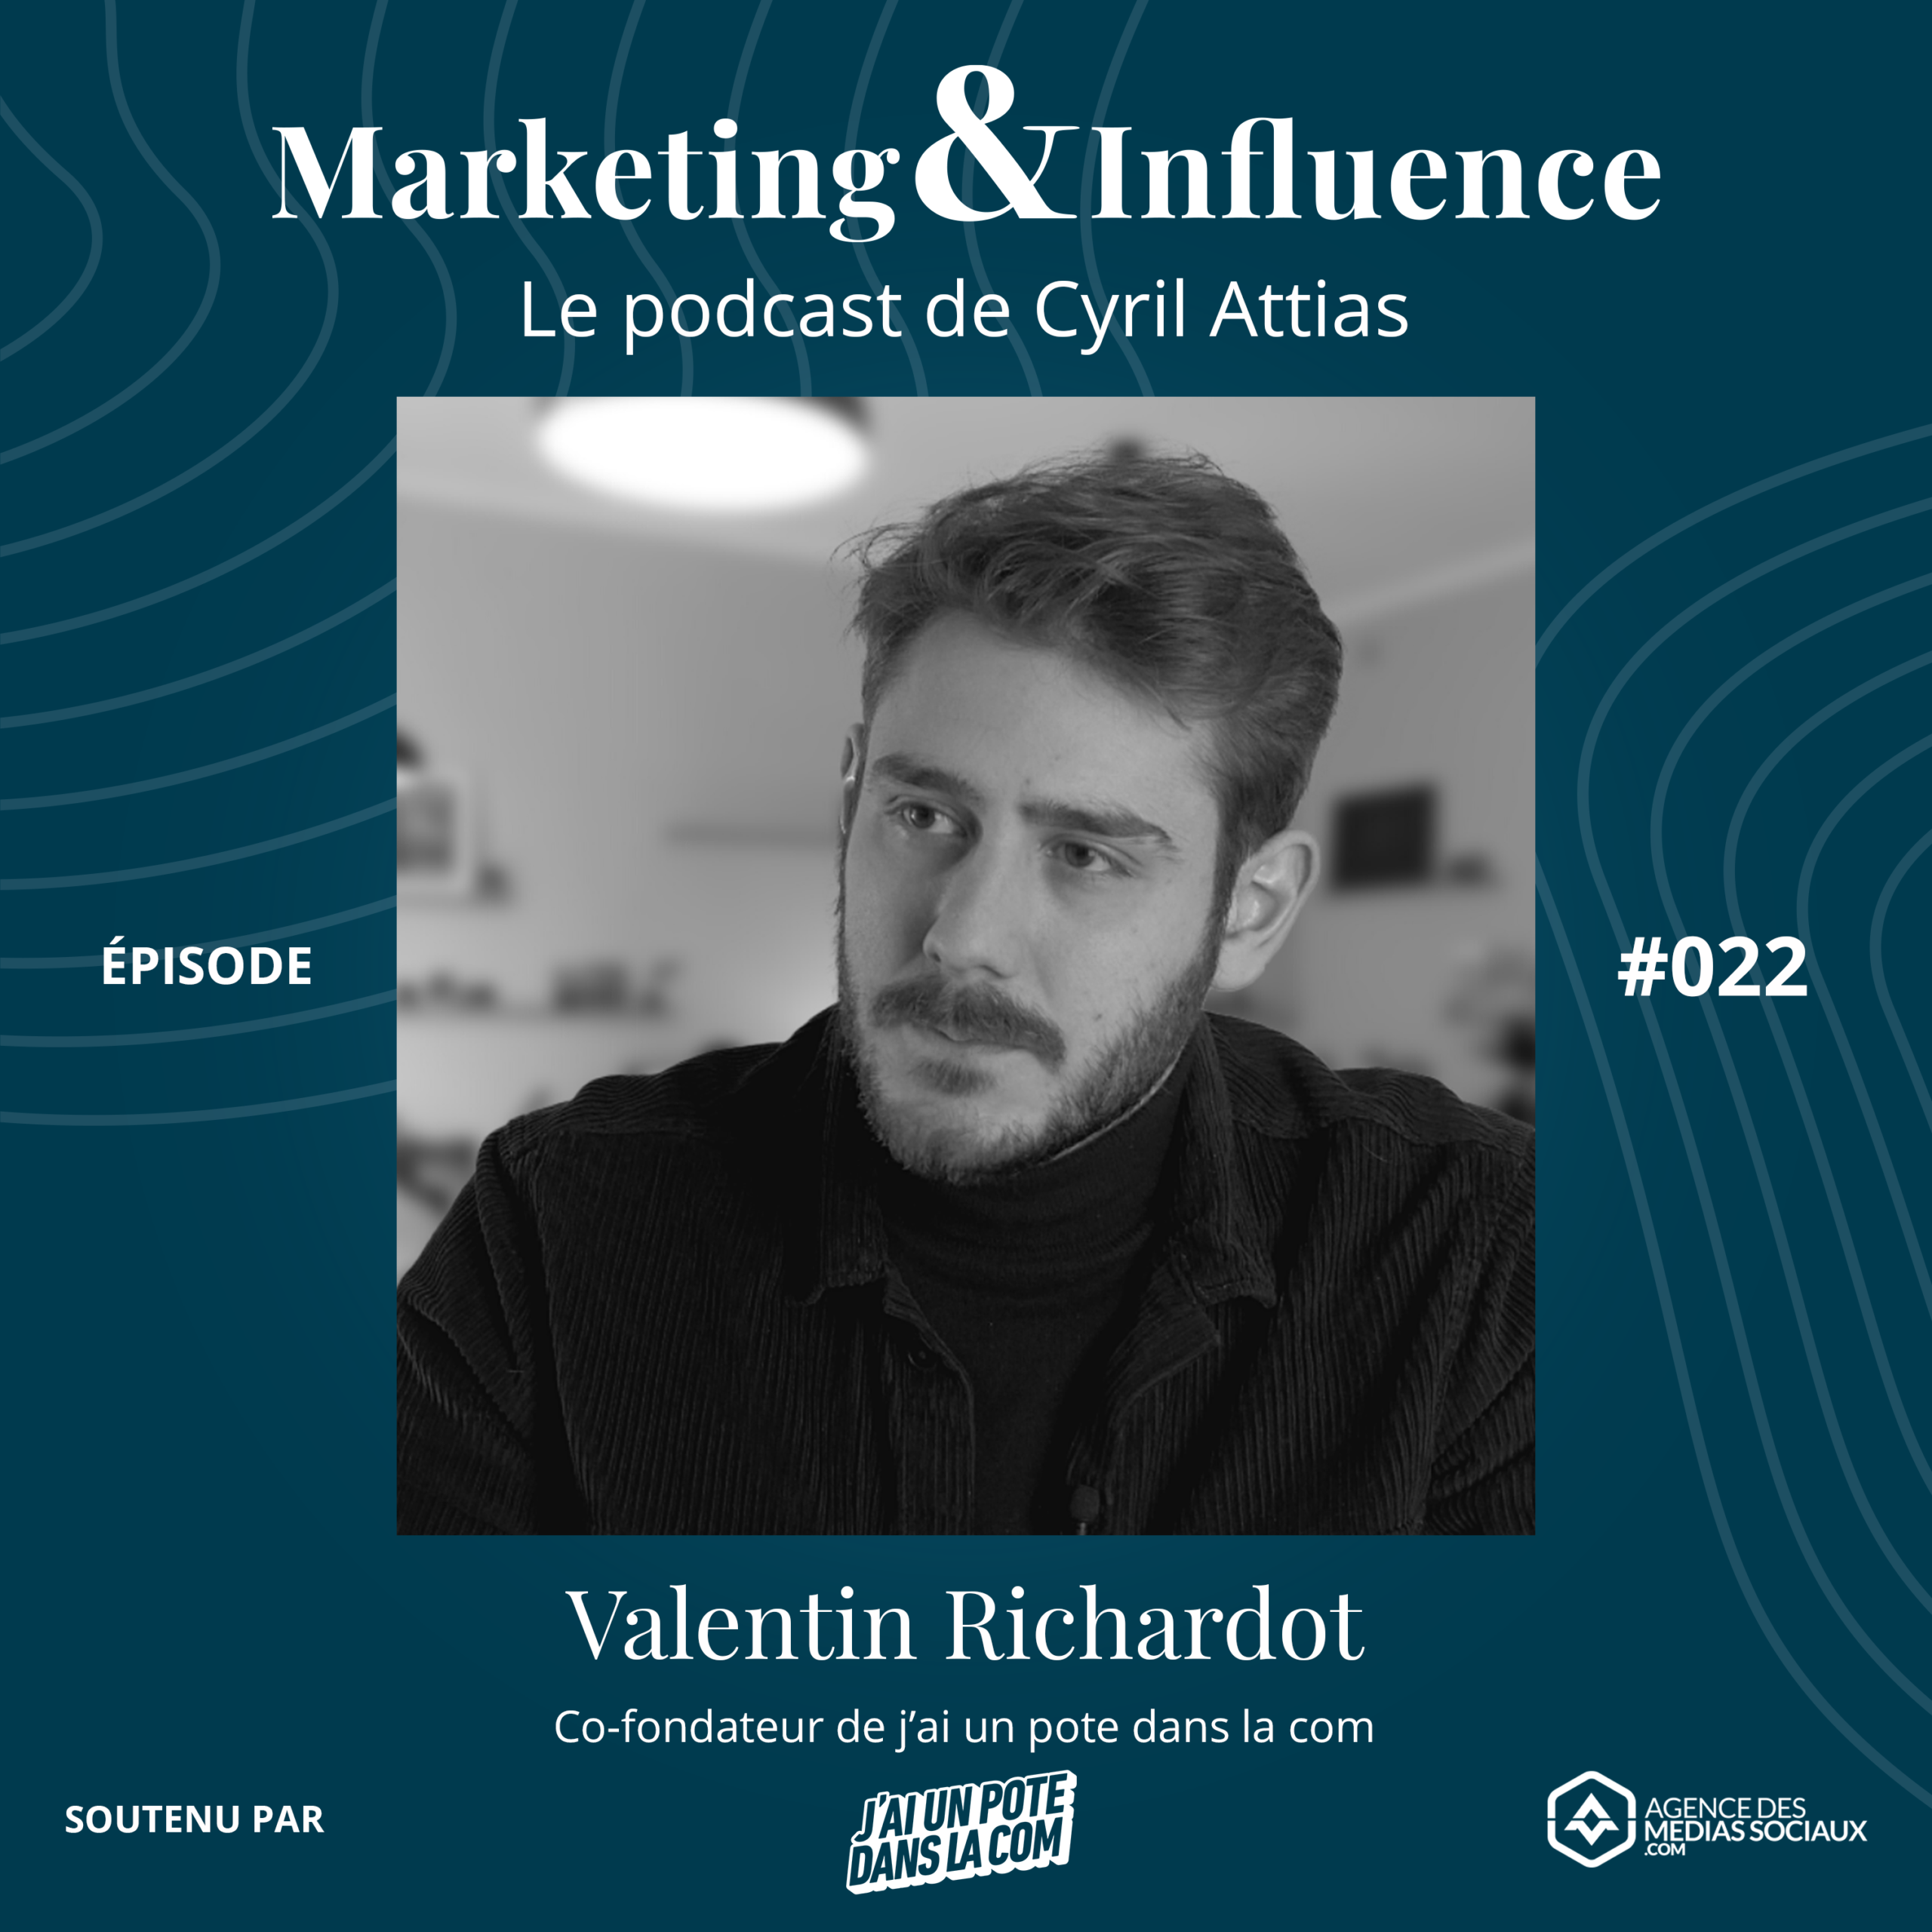 Episode-JAIUNPOTEDANSLACOM-Valentin-Richardot-podcast-cyril-attias-marketing-influence